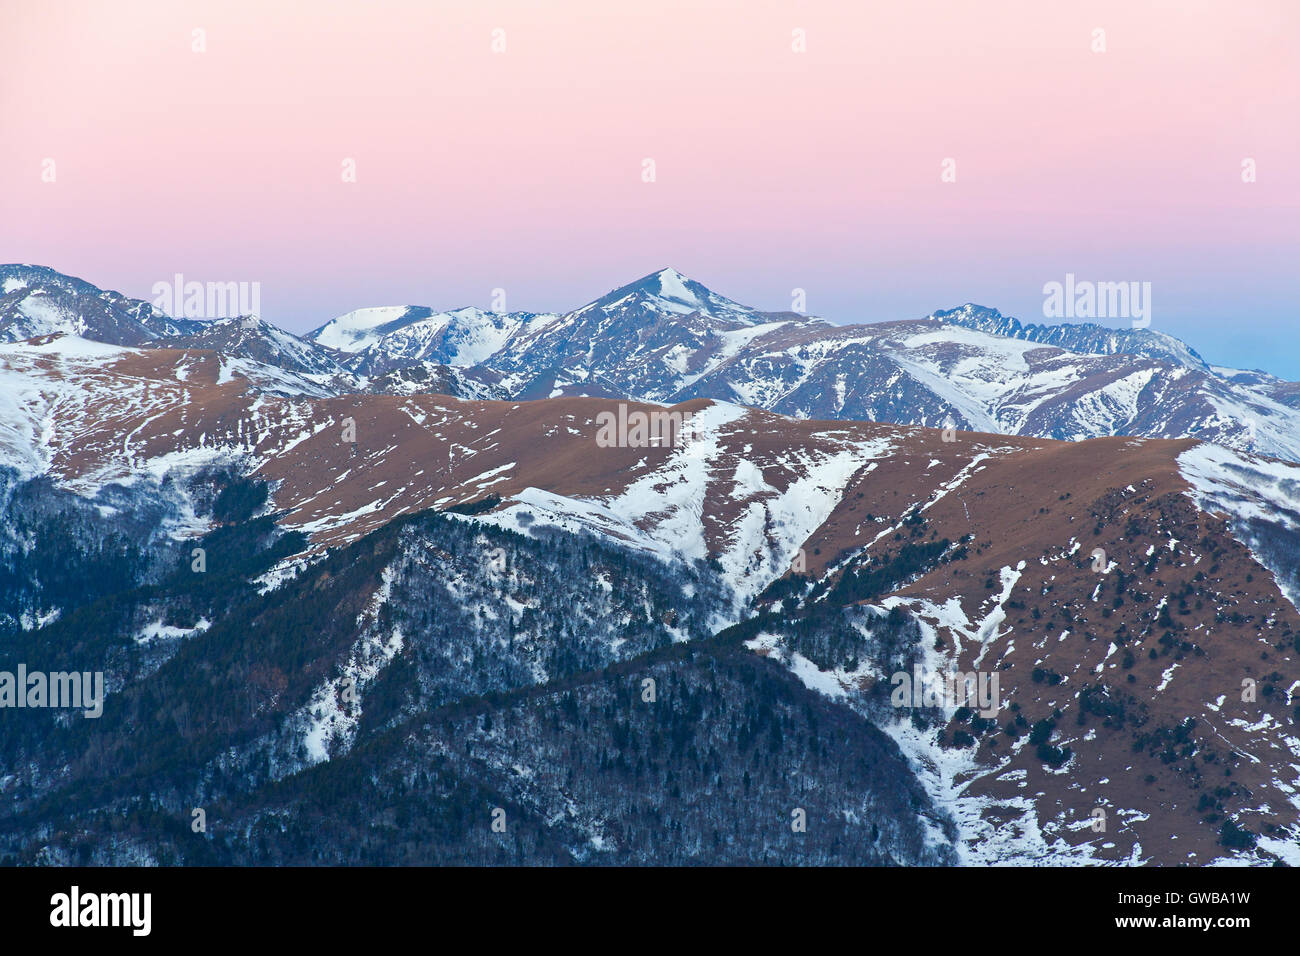 Le matin d'hiver dans la zone de montagnes en Arkhyz (Russie) avec des pentes couvertes de neige, haut de pics allumée par la lumière du soleil Banque D'Images